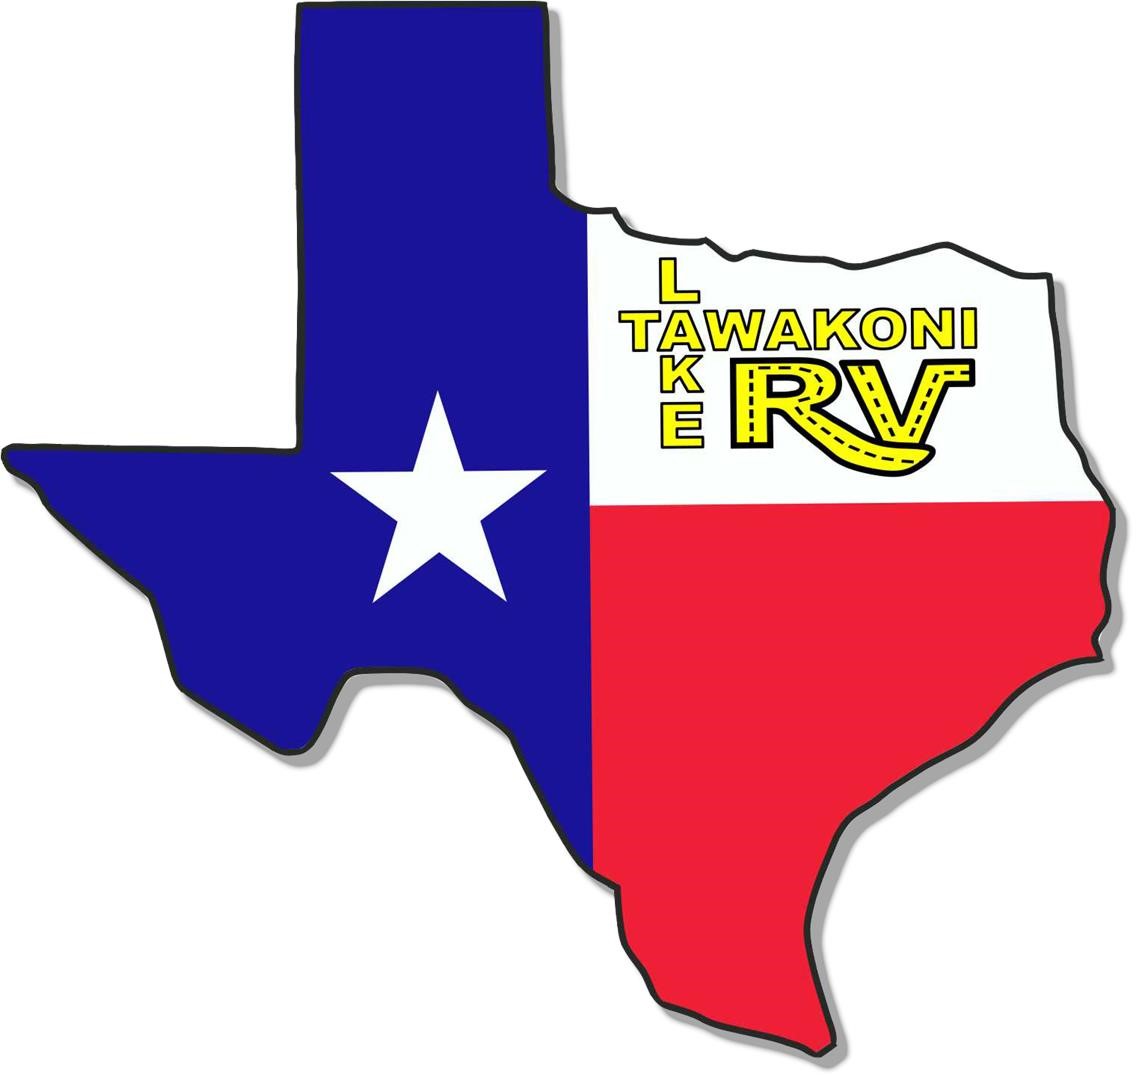 Rvs For Sale From Lake Tawakoni Rv Center West Tawakoni Texas 61 Listings Rvuniverse Com